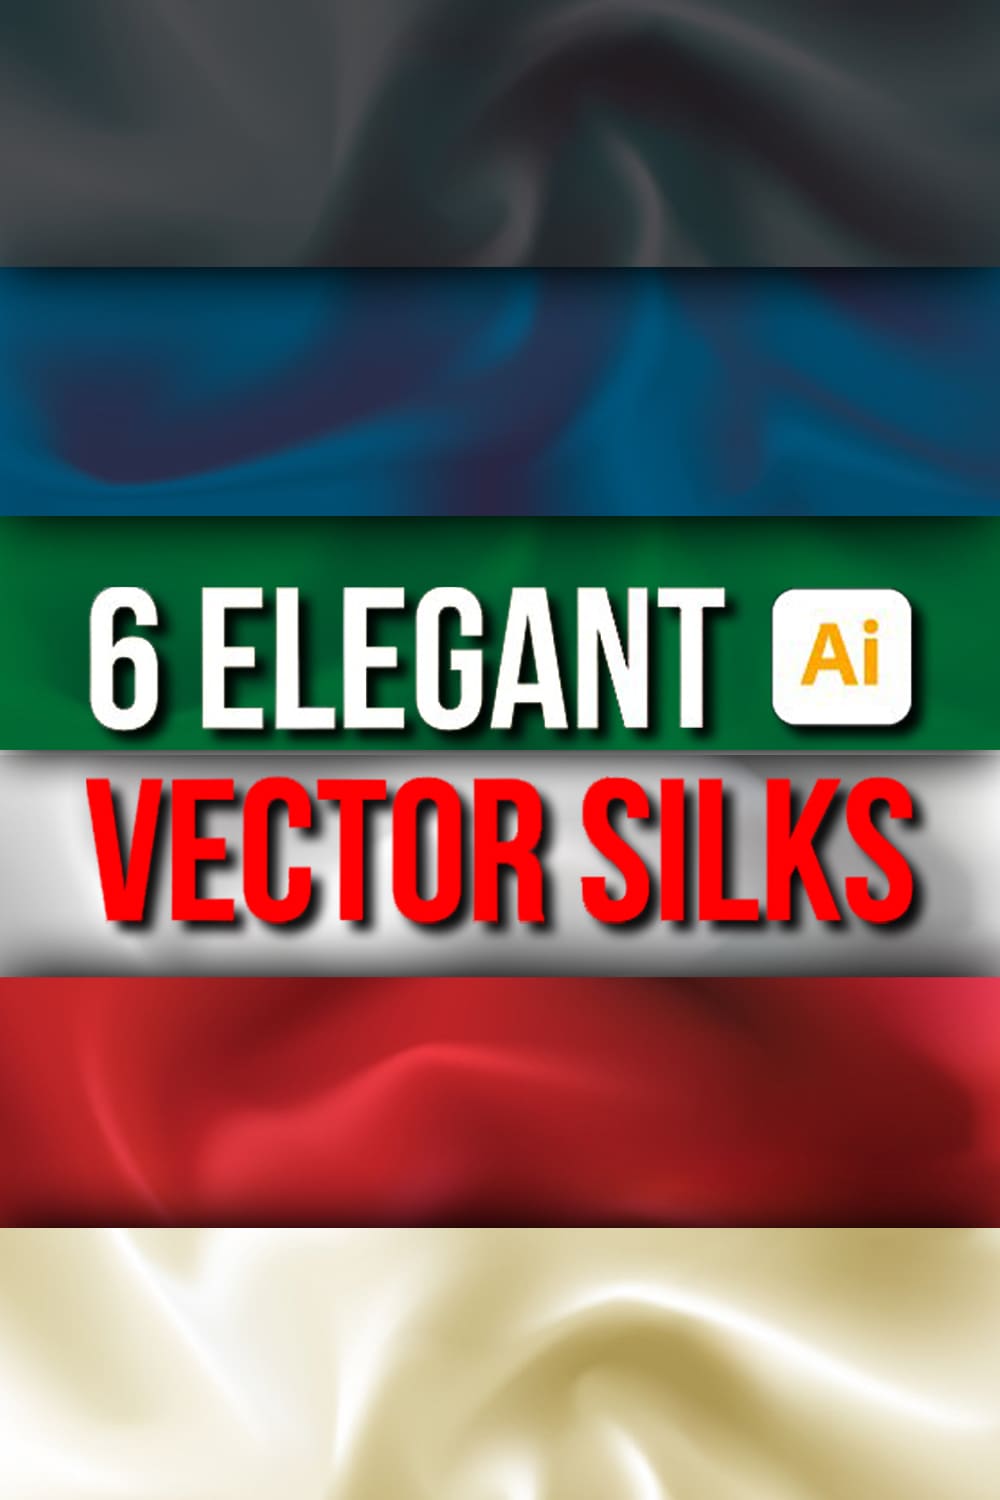 6 elegant vector silks - pinterest image preview.